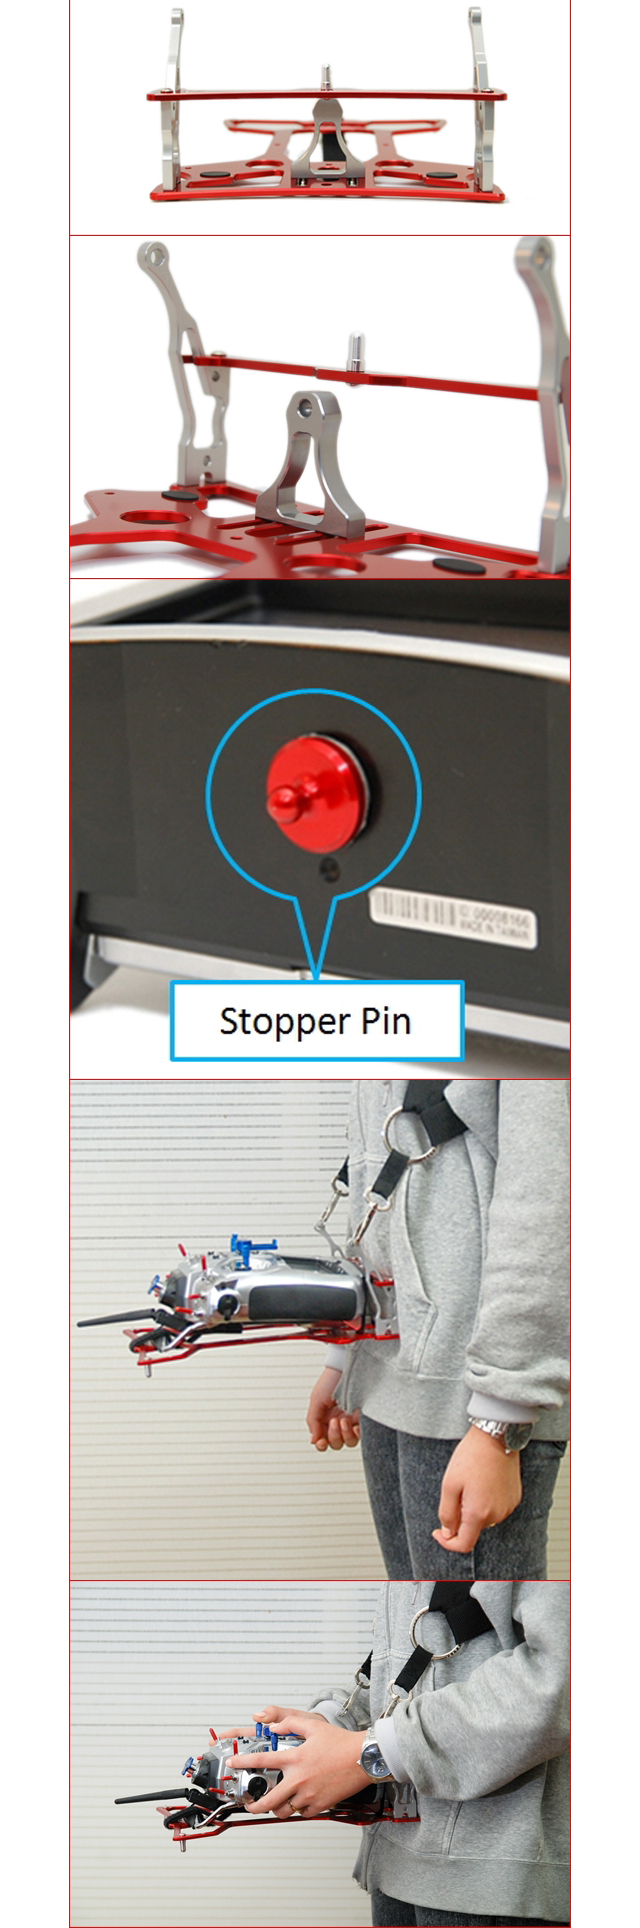 STF-080-500-005 stopper pin